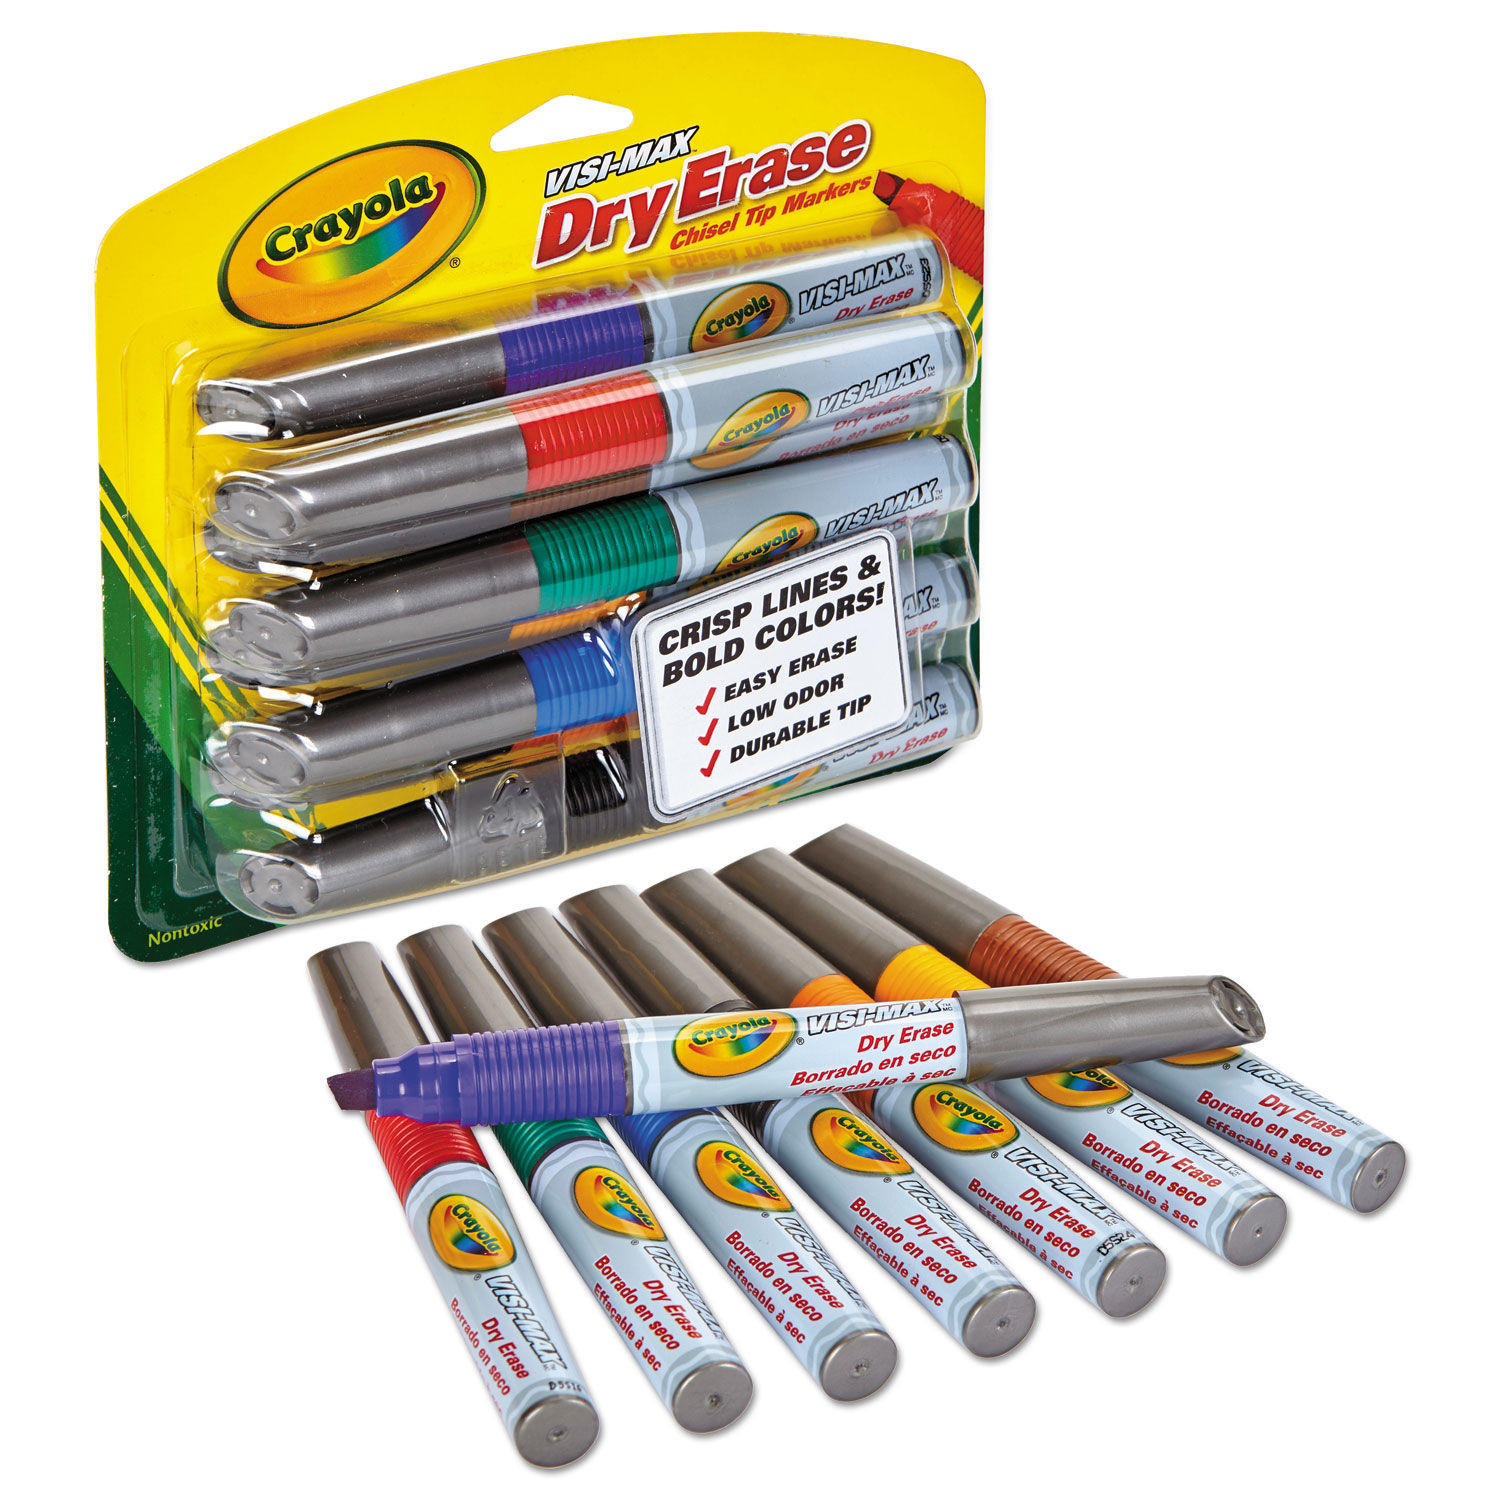 Dry Erase Marker by Crayola® CYO988900